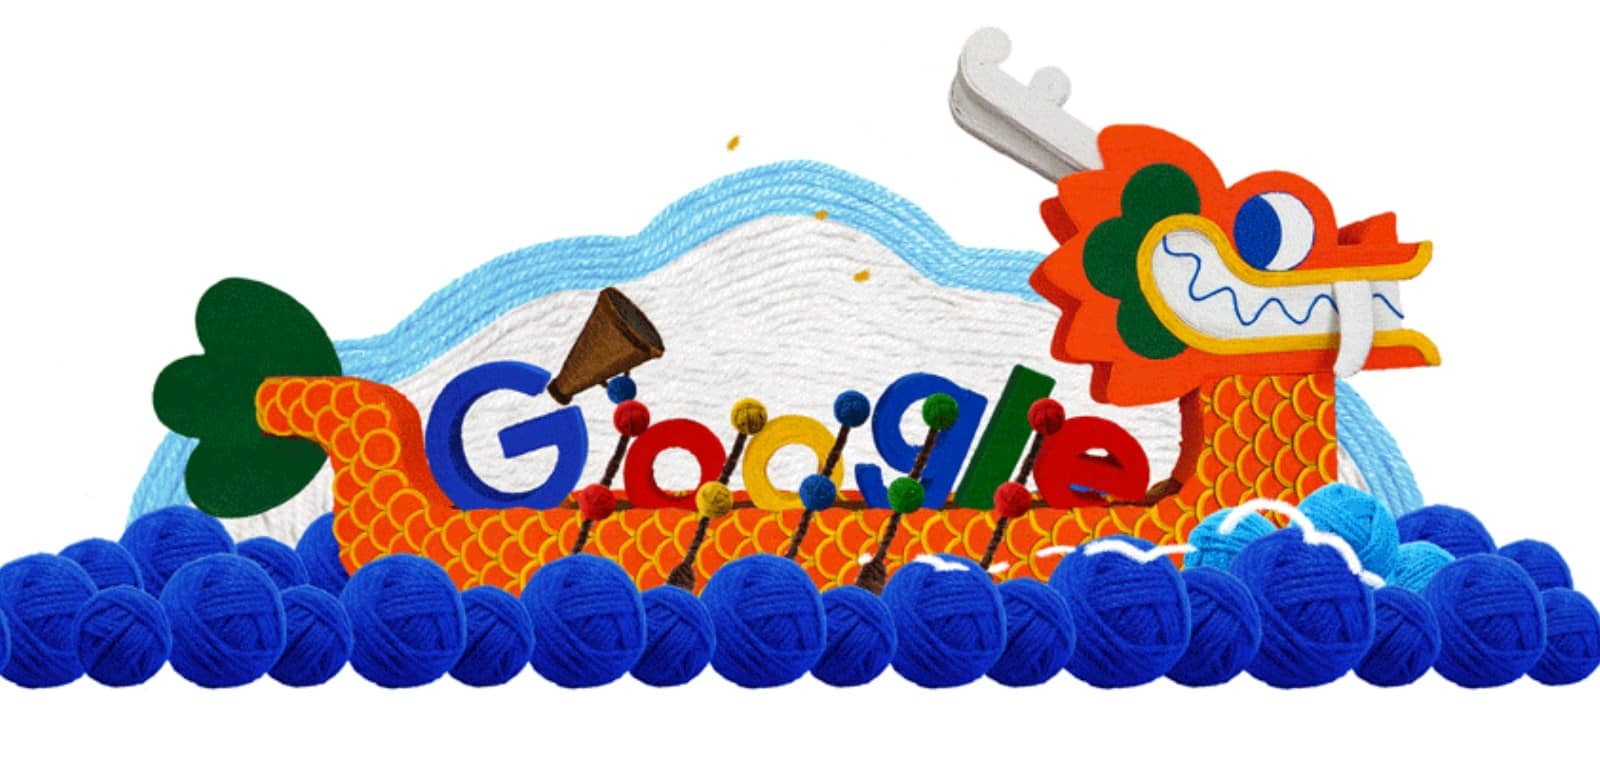 Bateau-dragon fabriqué à la main pour le Doodle de Google